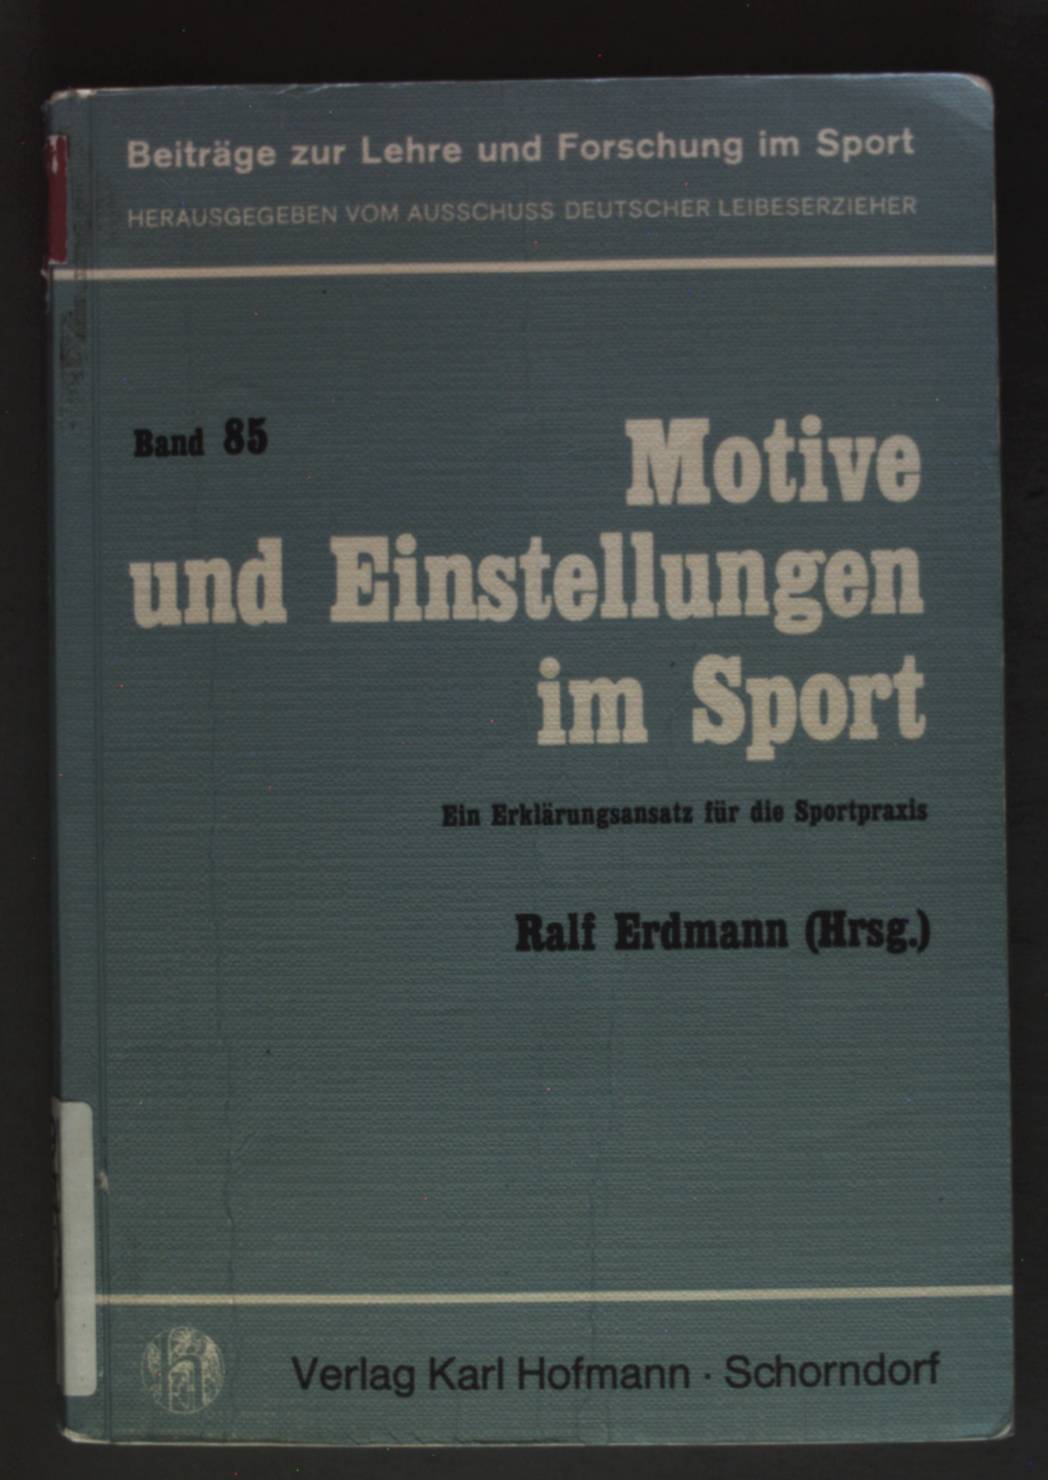 Motive und Einstellungen im Sport : e. Erklärungsansatz für d. Sportpraxis. Beiträge zur Lehre und Forschung im Sport ; Bd. 85 - Erdmann, Ralf